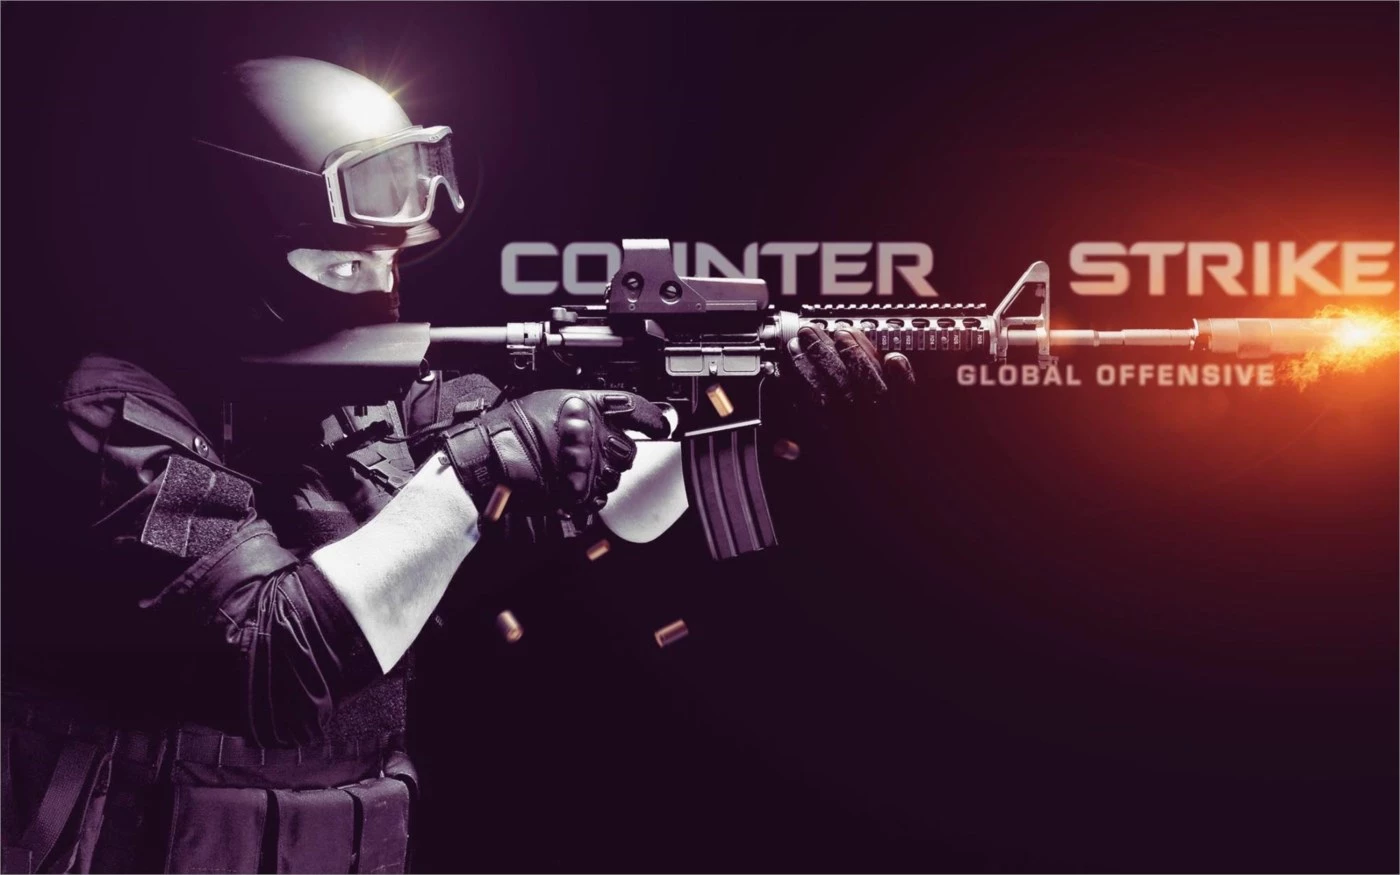 Boost De Patente Cs:Go Até Águia 2 - Counter Strike - DFG